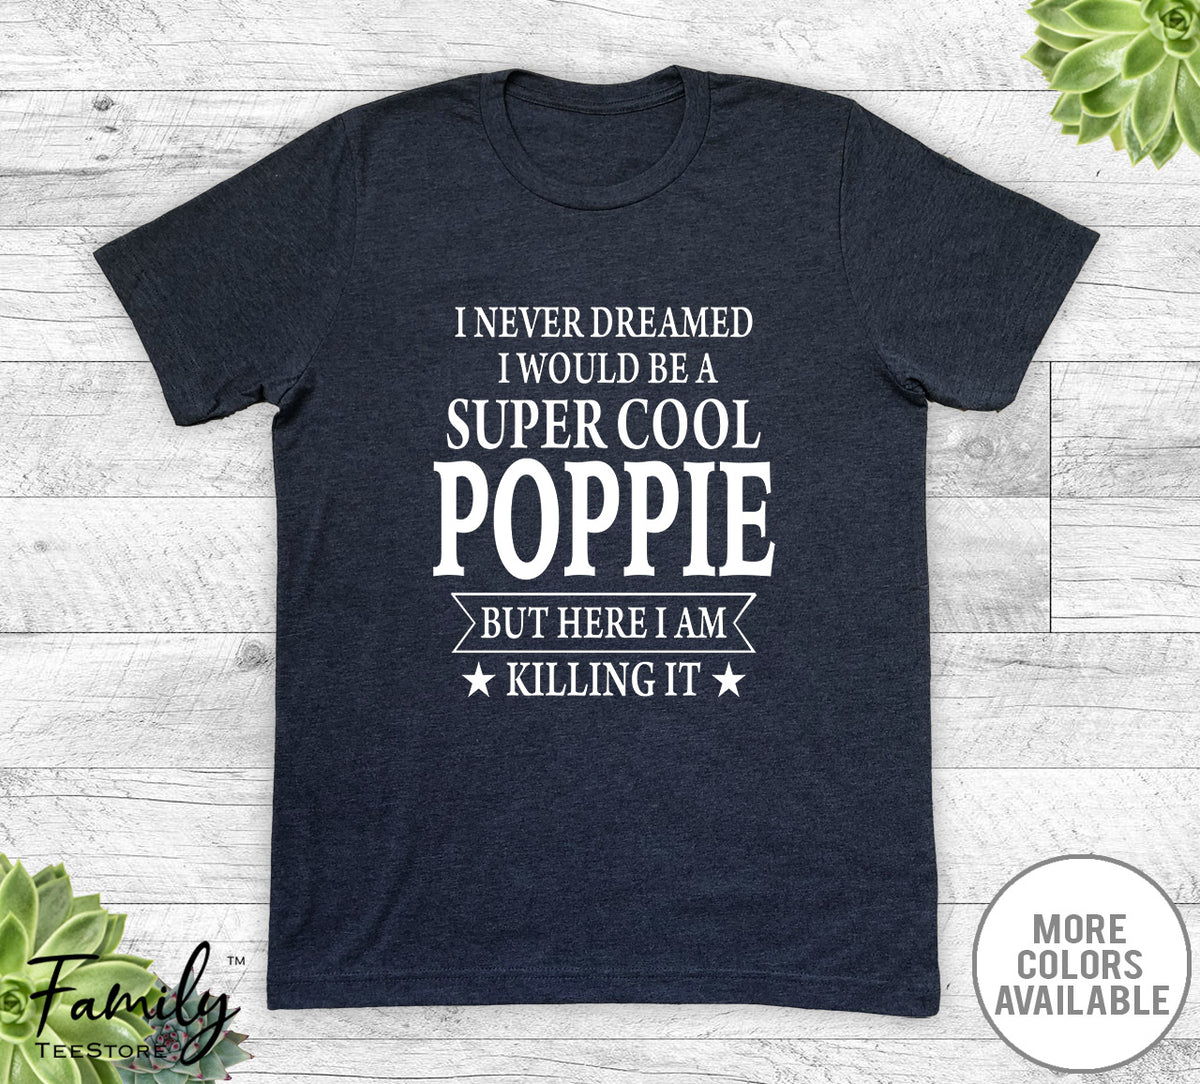 I Never Dreamed I'd Be A Super Cool Poppie - Unisex T-shirt - Poppie Shirt - Poppie Gift